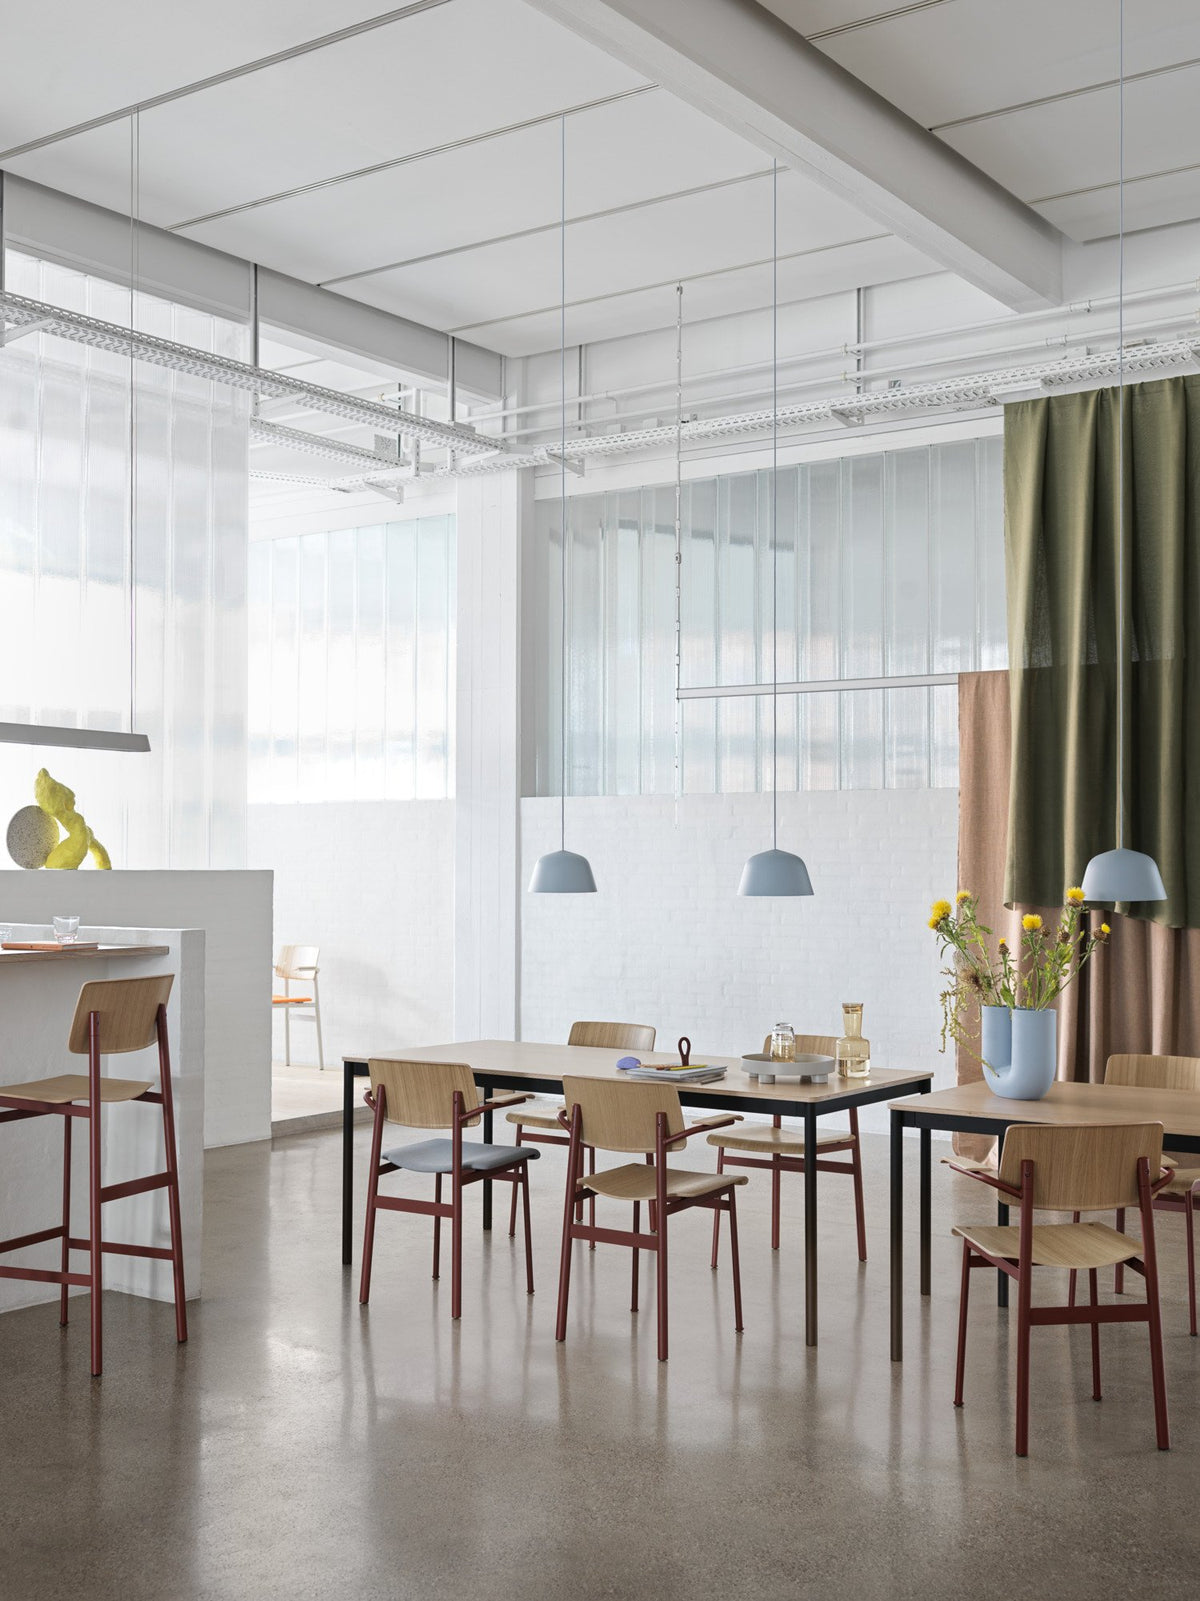 Base Tisch in Eiche / Schwarz präsentiert im Onlineshop von KAQTU Design AG. Schreibtisch ist von Muuto